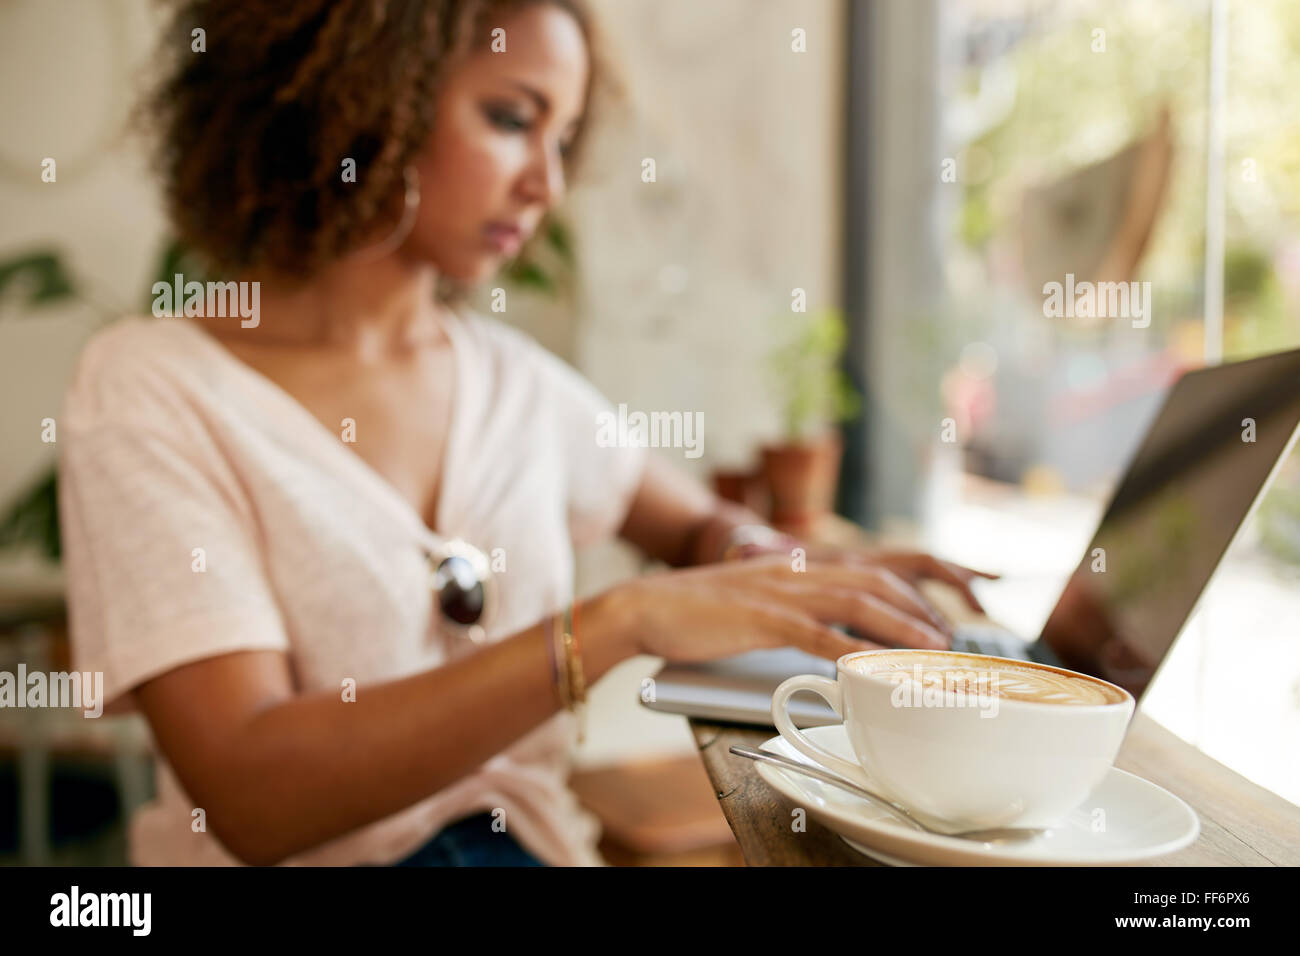 Tazza di cappuccino fresco sul tavolo con una giovane donna che lavorano su computer portatile in background. La messa a fuoco della tazza di caffè presso il cafe. Foto Stock